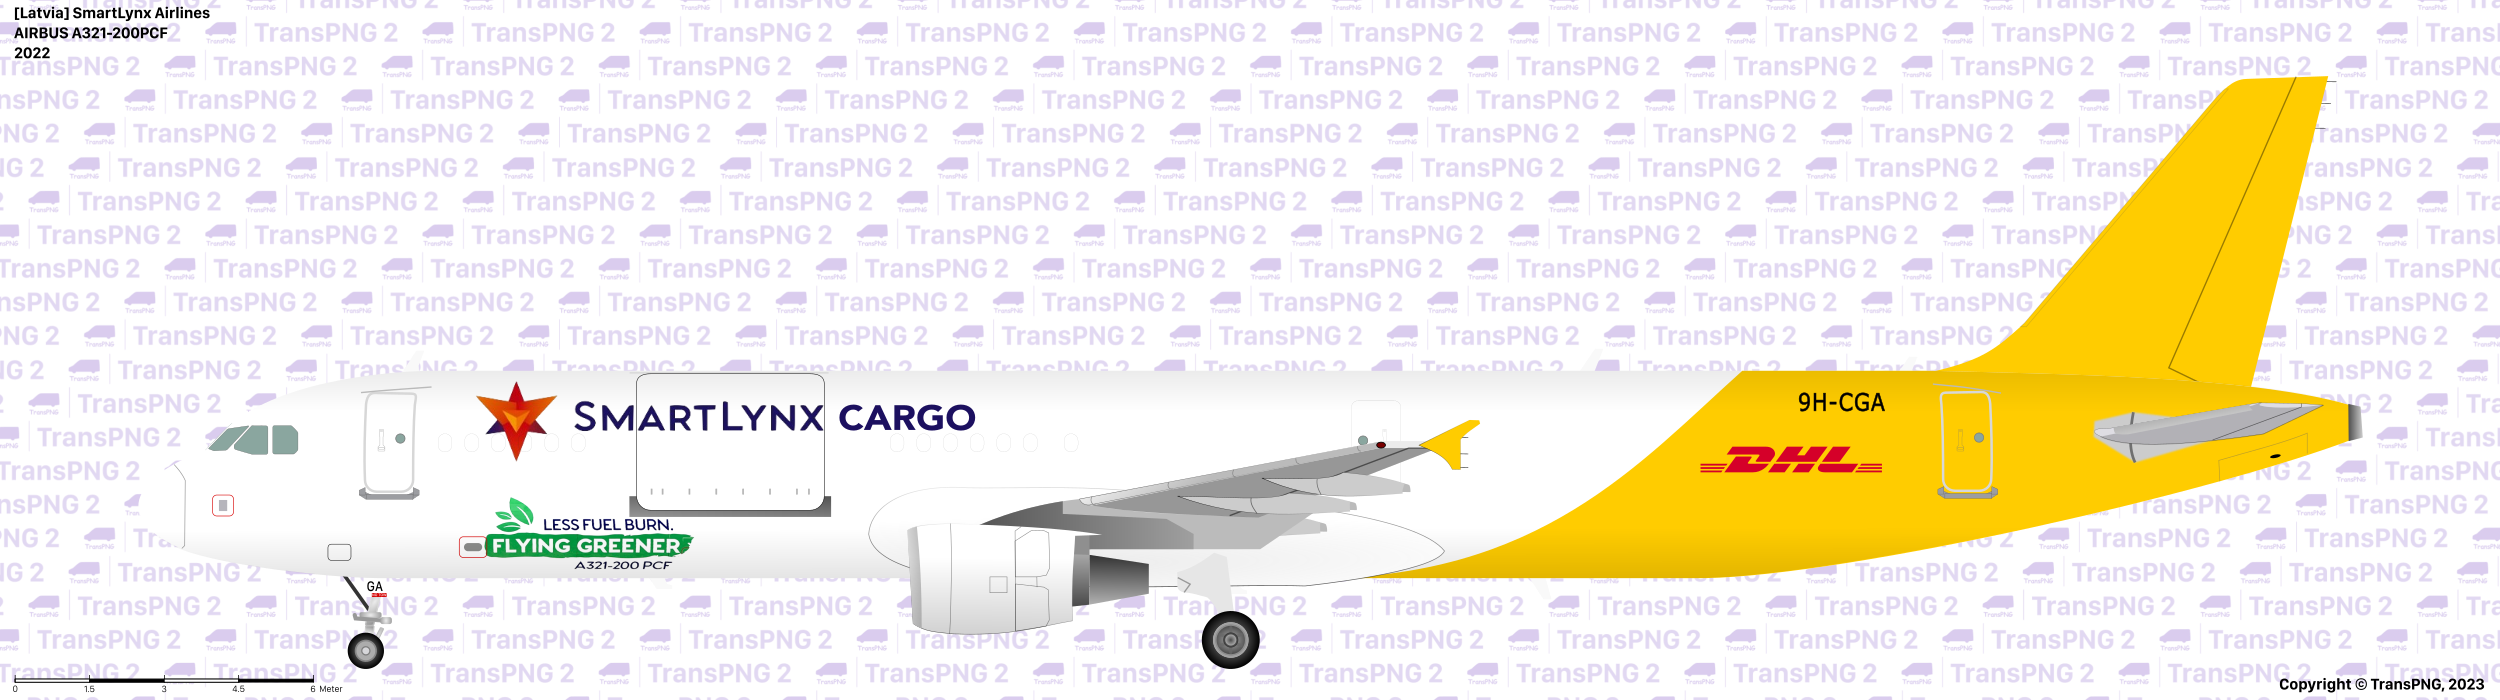 TransPNG.net | 分享世界各地多種交通工具的優秀繪圖 - 飛機 52726671044_96bd2f22a1_o